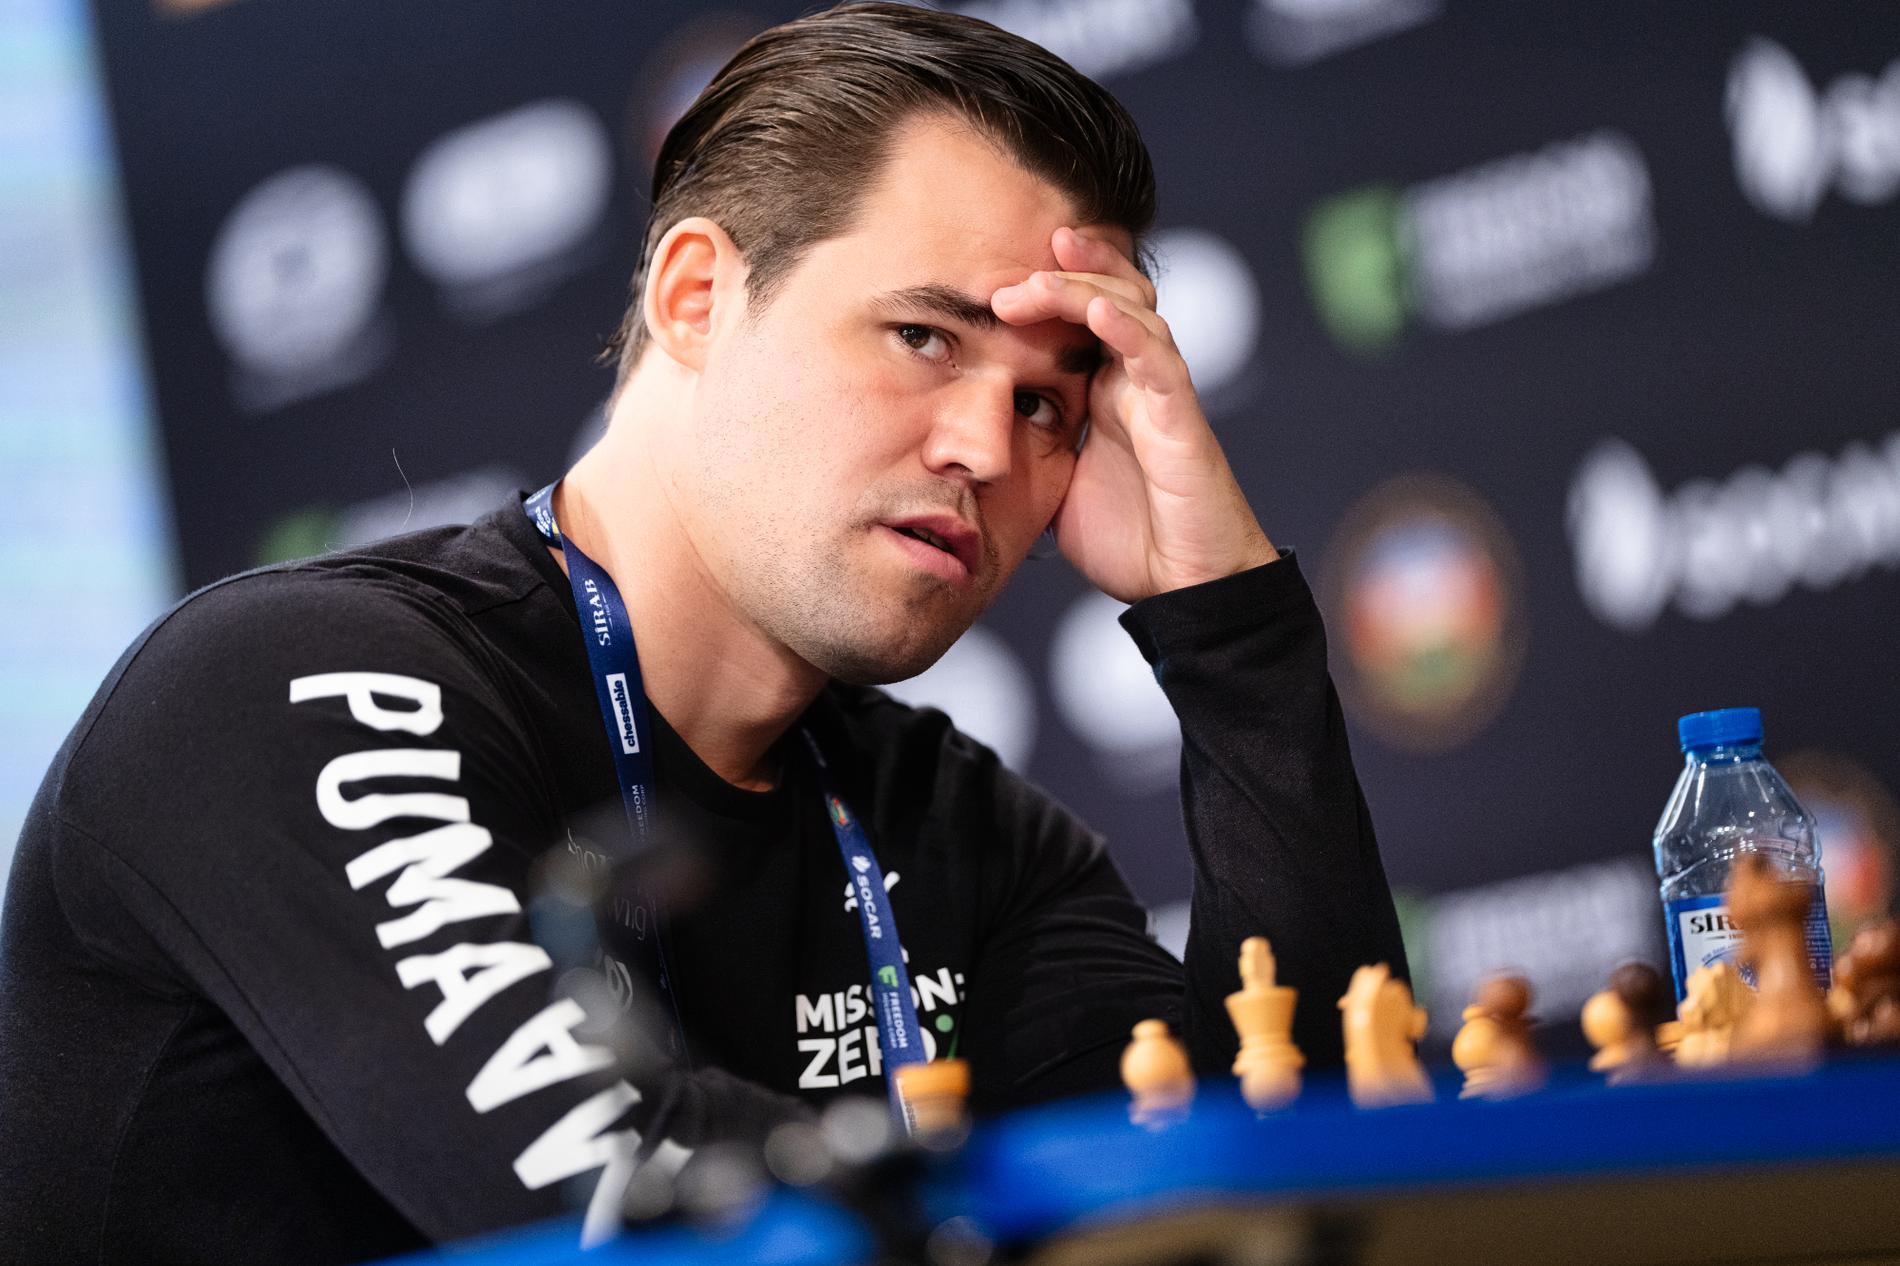 Magnus Carlsen fell asleep, but won a thrilling final